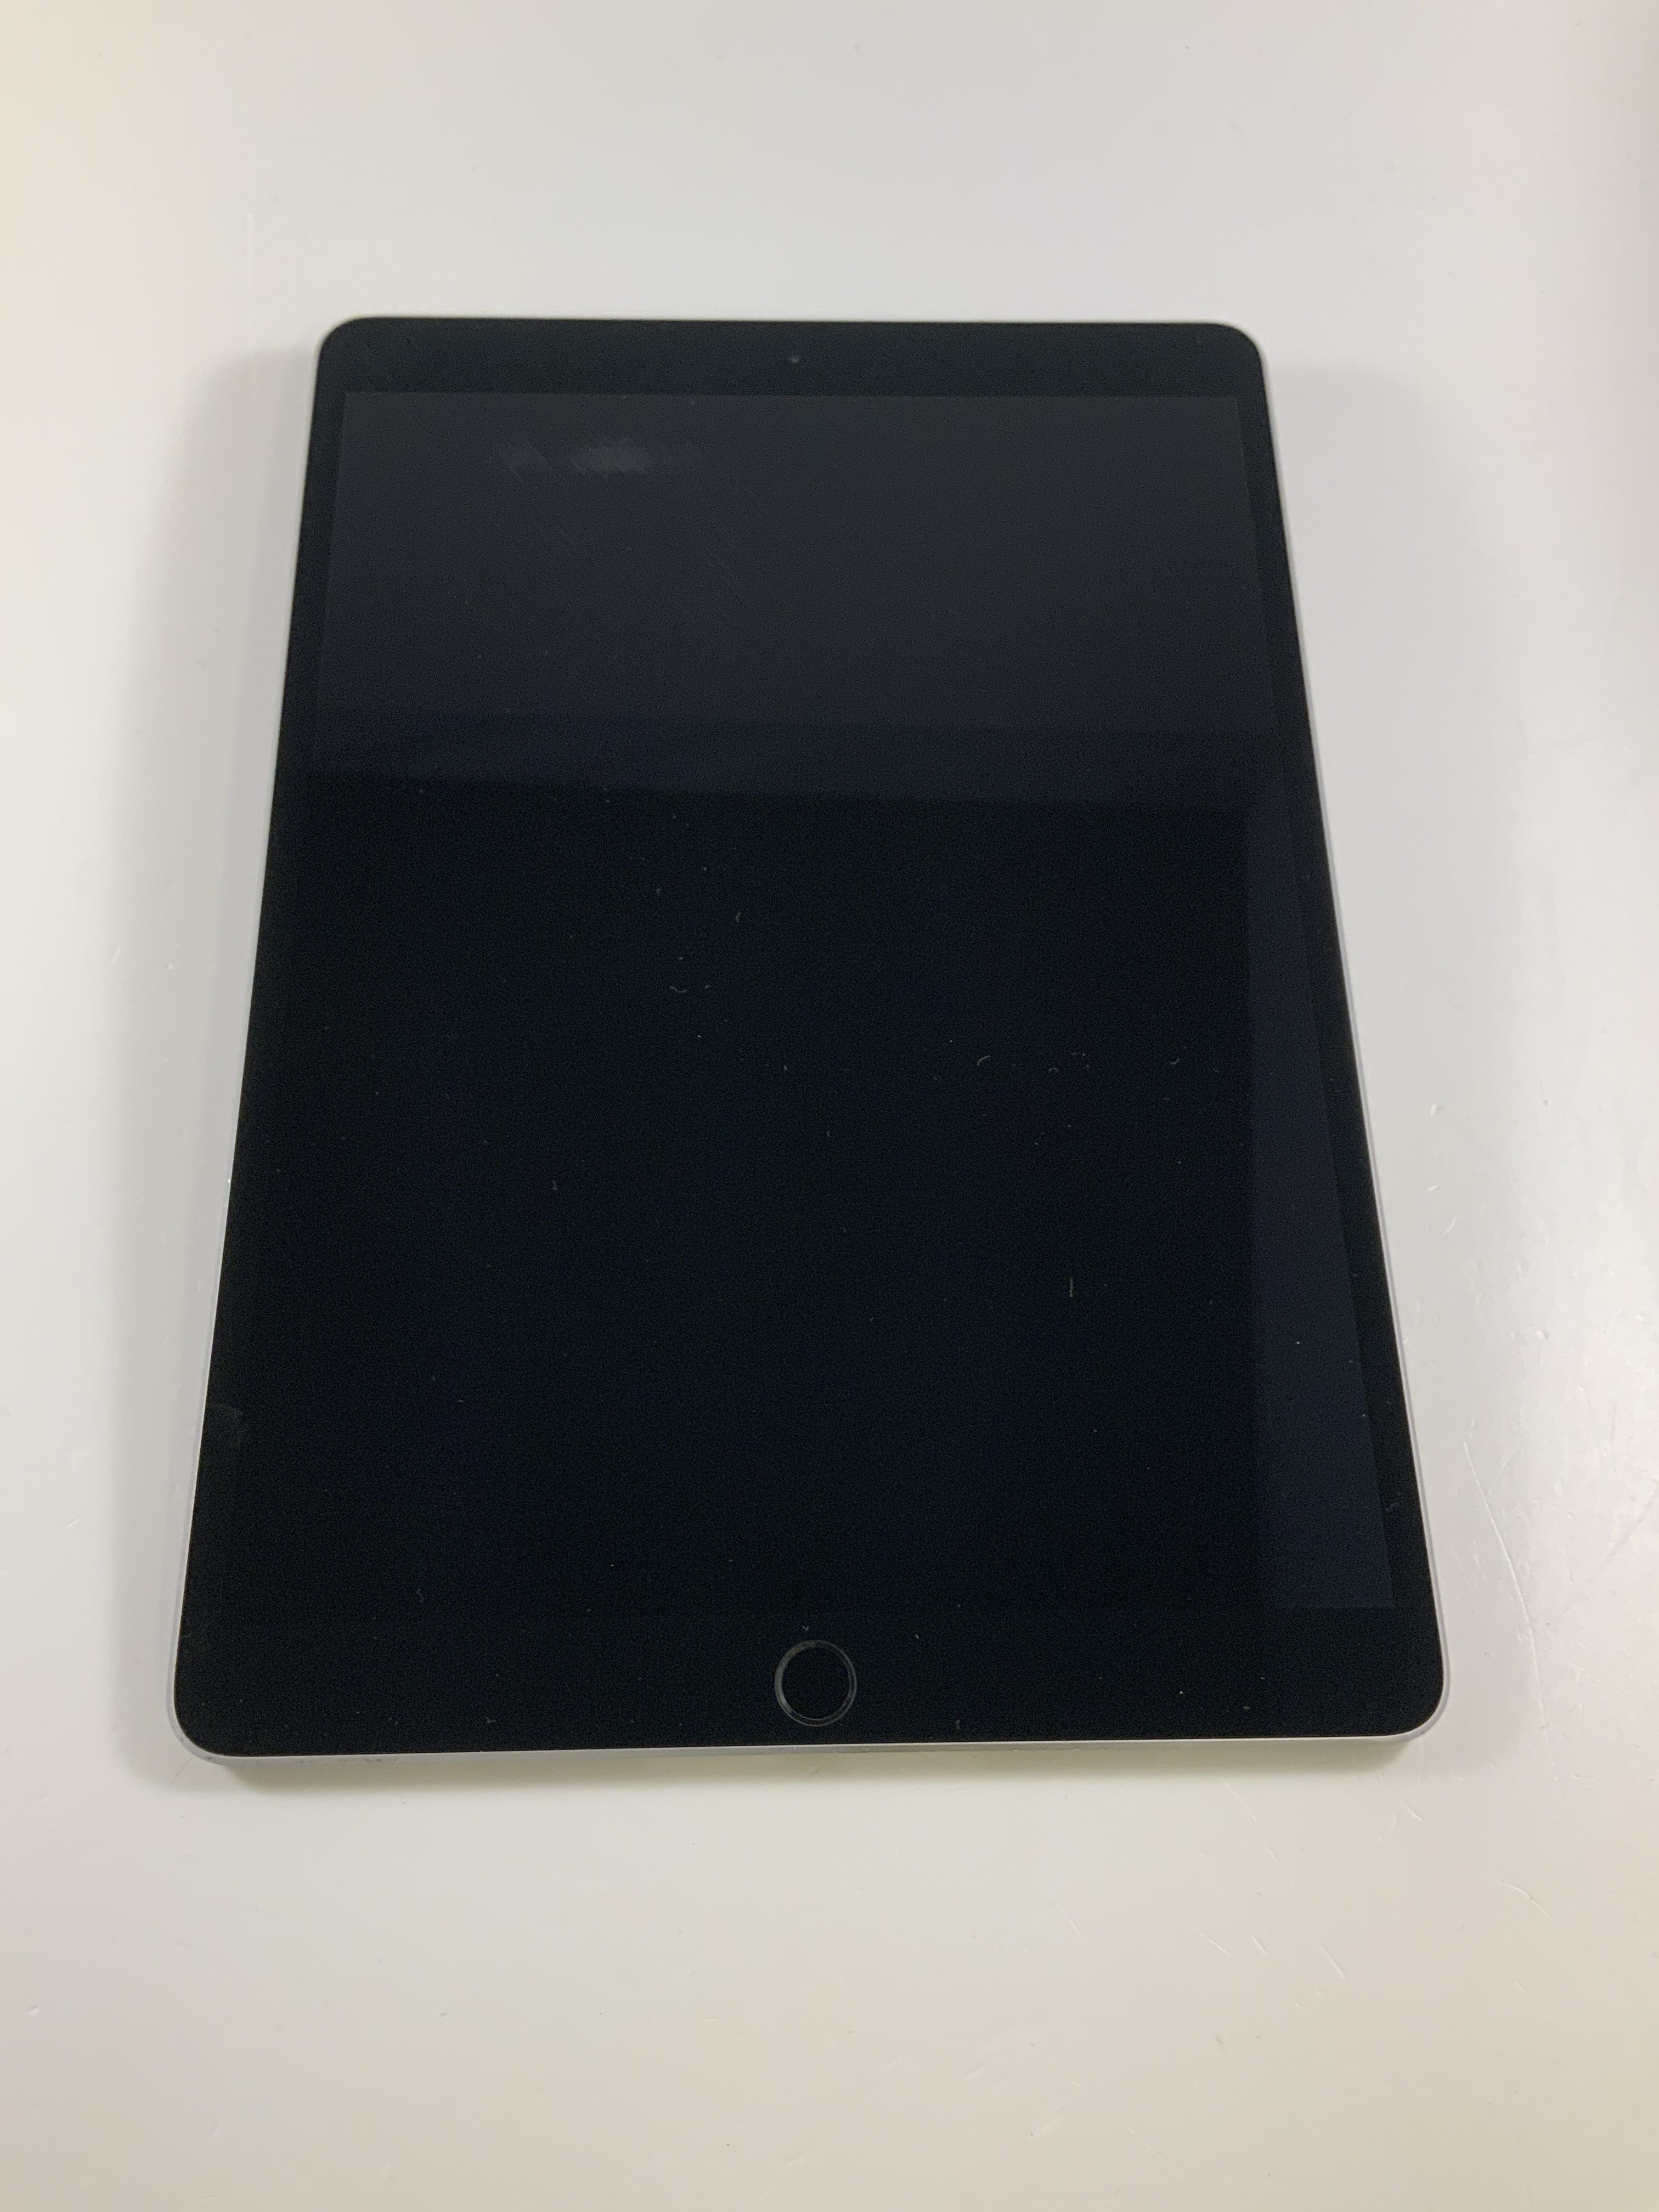 iPad Pro 10.5" Wi-Fi + Cellular 64GB, 64GB, Space Gray, Afbeelding 1